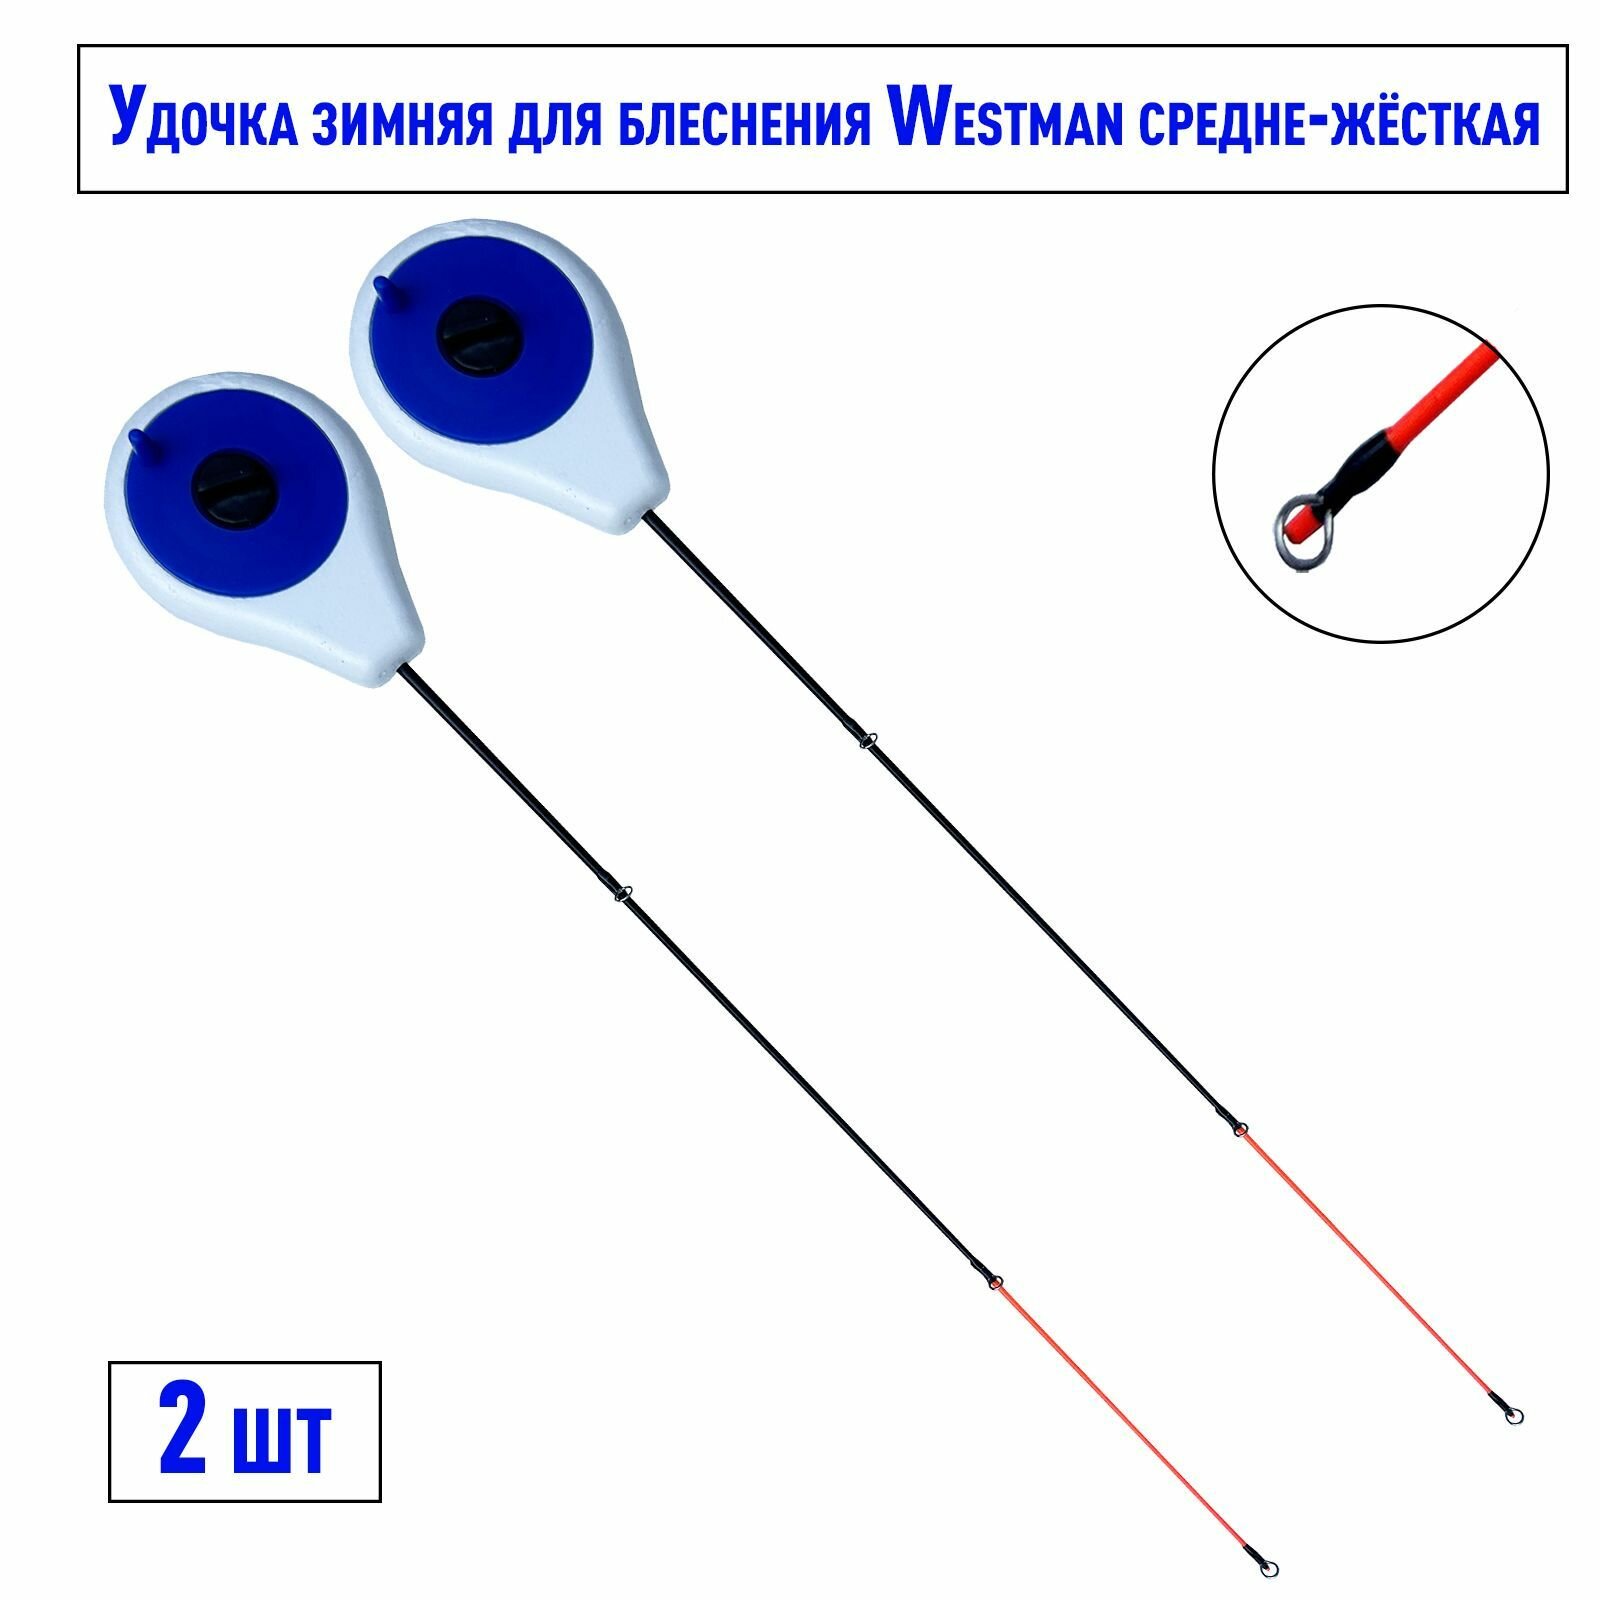 Блеснилка зимняя Westman средне-жёсткая синяя 2 шт / Удочка зимняя для блеснения